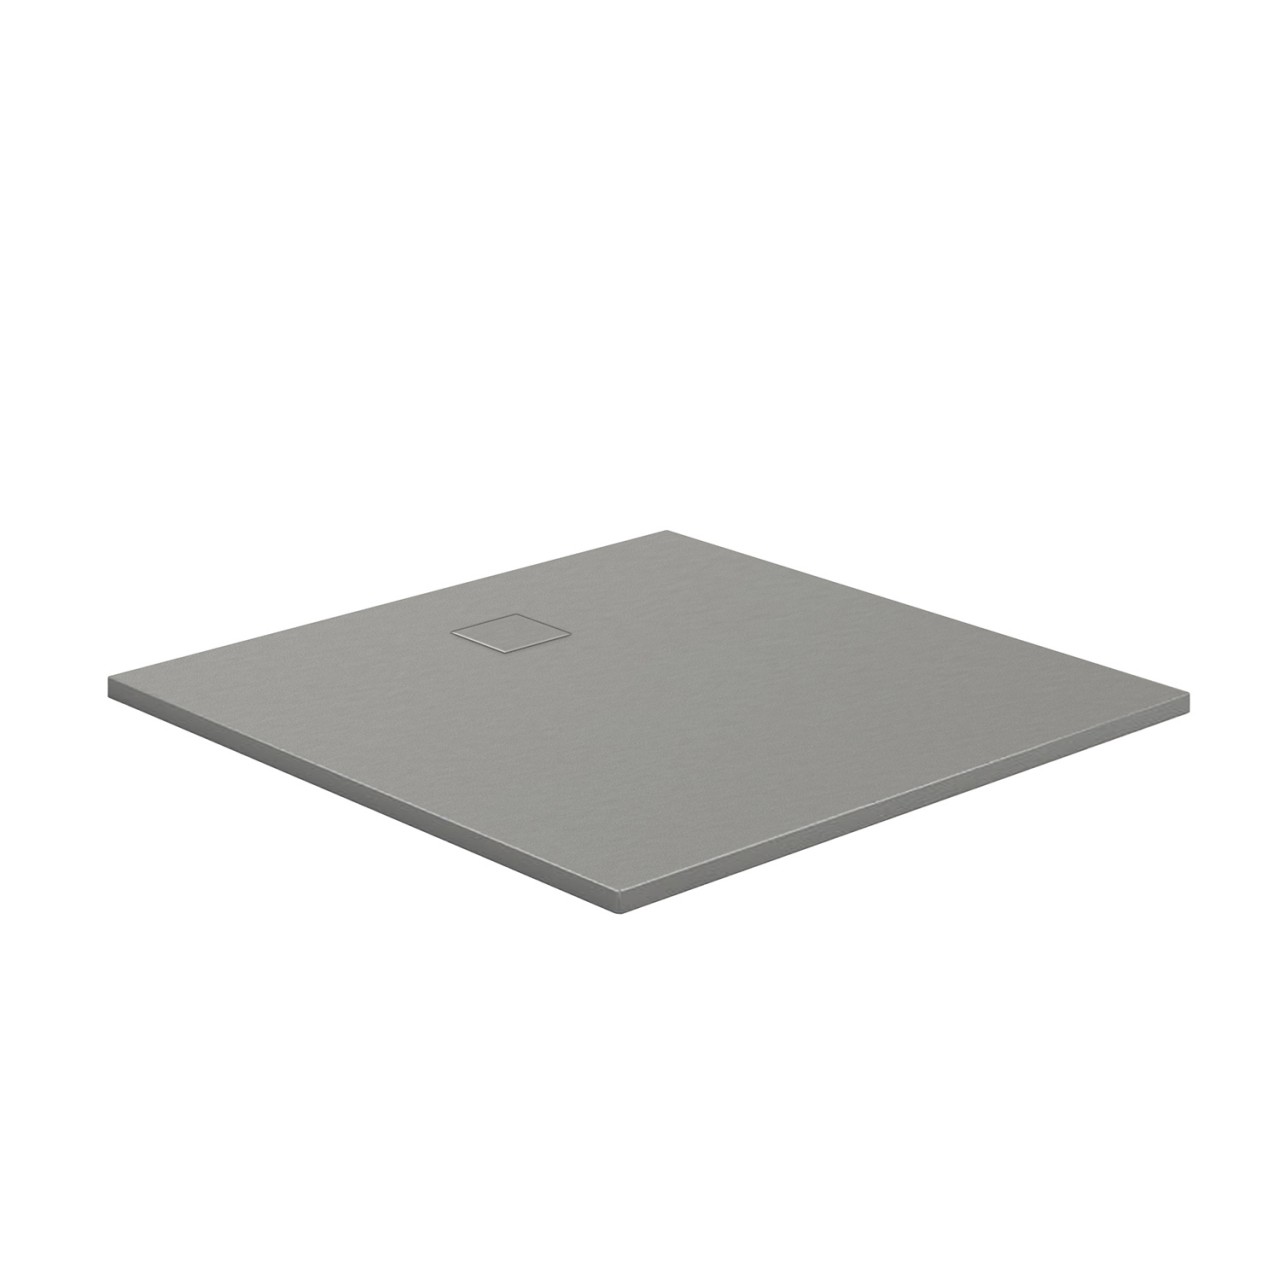 HSK Marmor-Polymer-Duschwanne, 120 x 120 cm, Steinoptik, Farbe: steingrau mit Antislip-Beschichtung 5825012-A-steingrau von HSK Duschkabinenbau KG